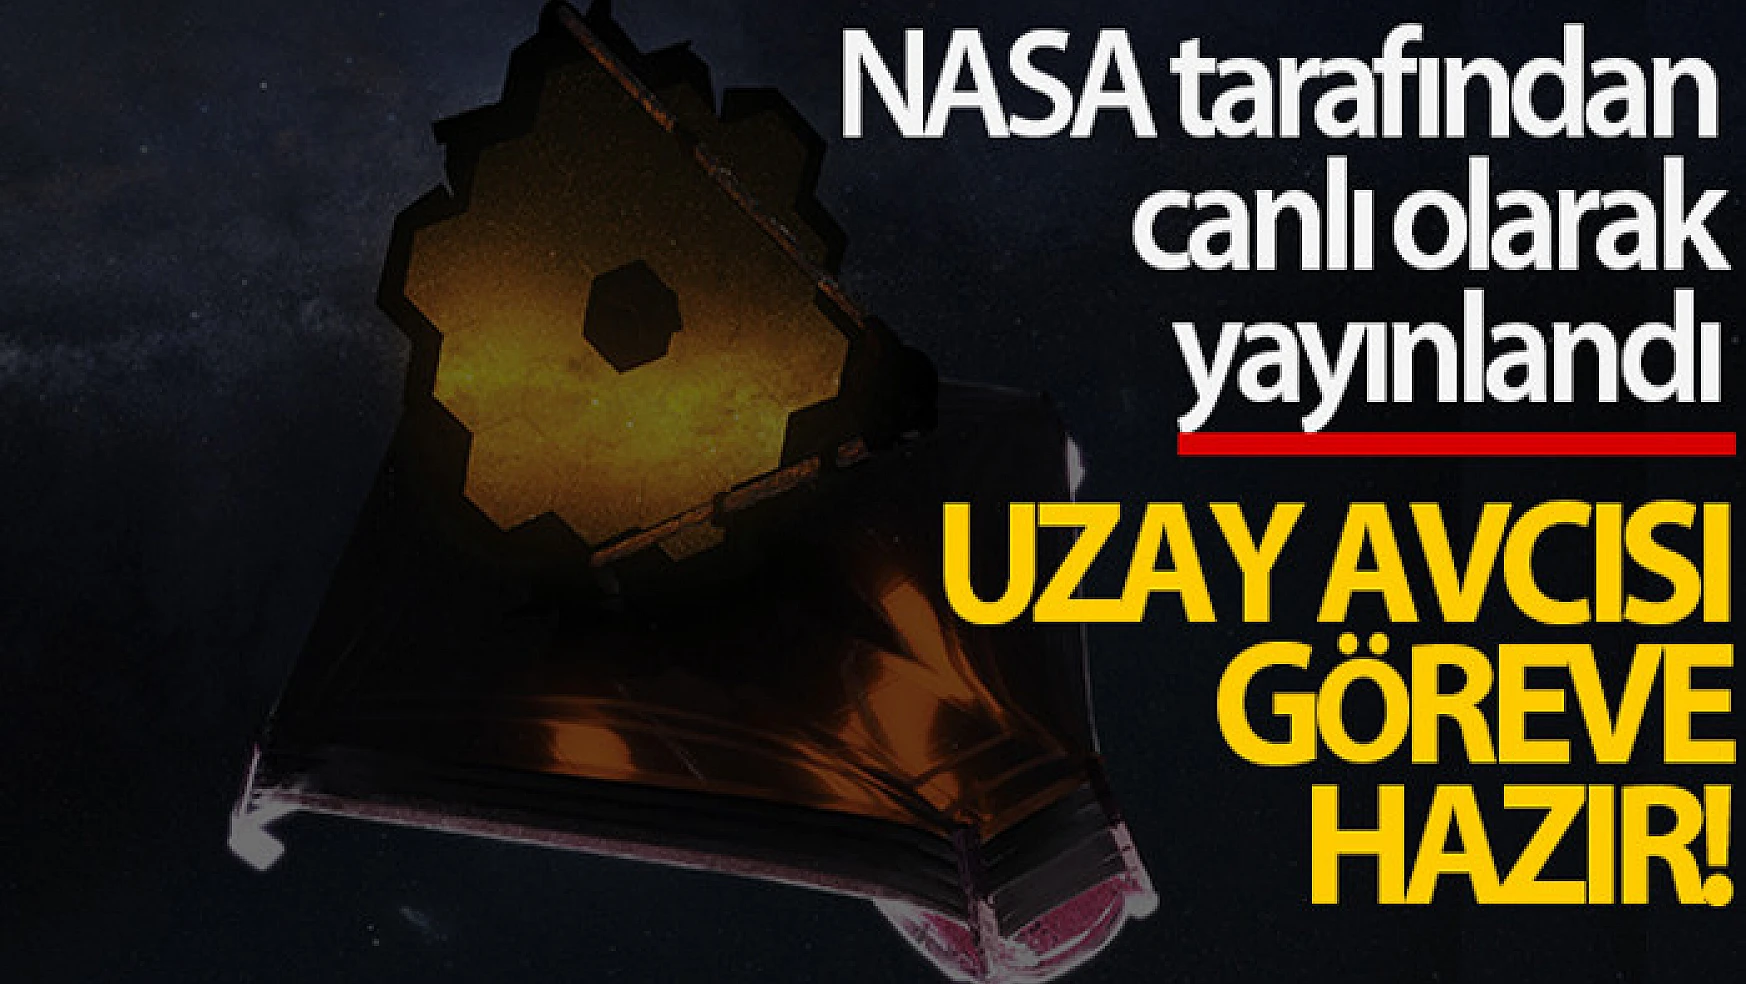 NASA'nın James Webb Uzay Teleskobu ayna açılışını tamamladı